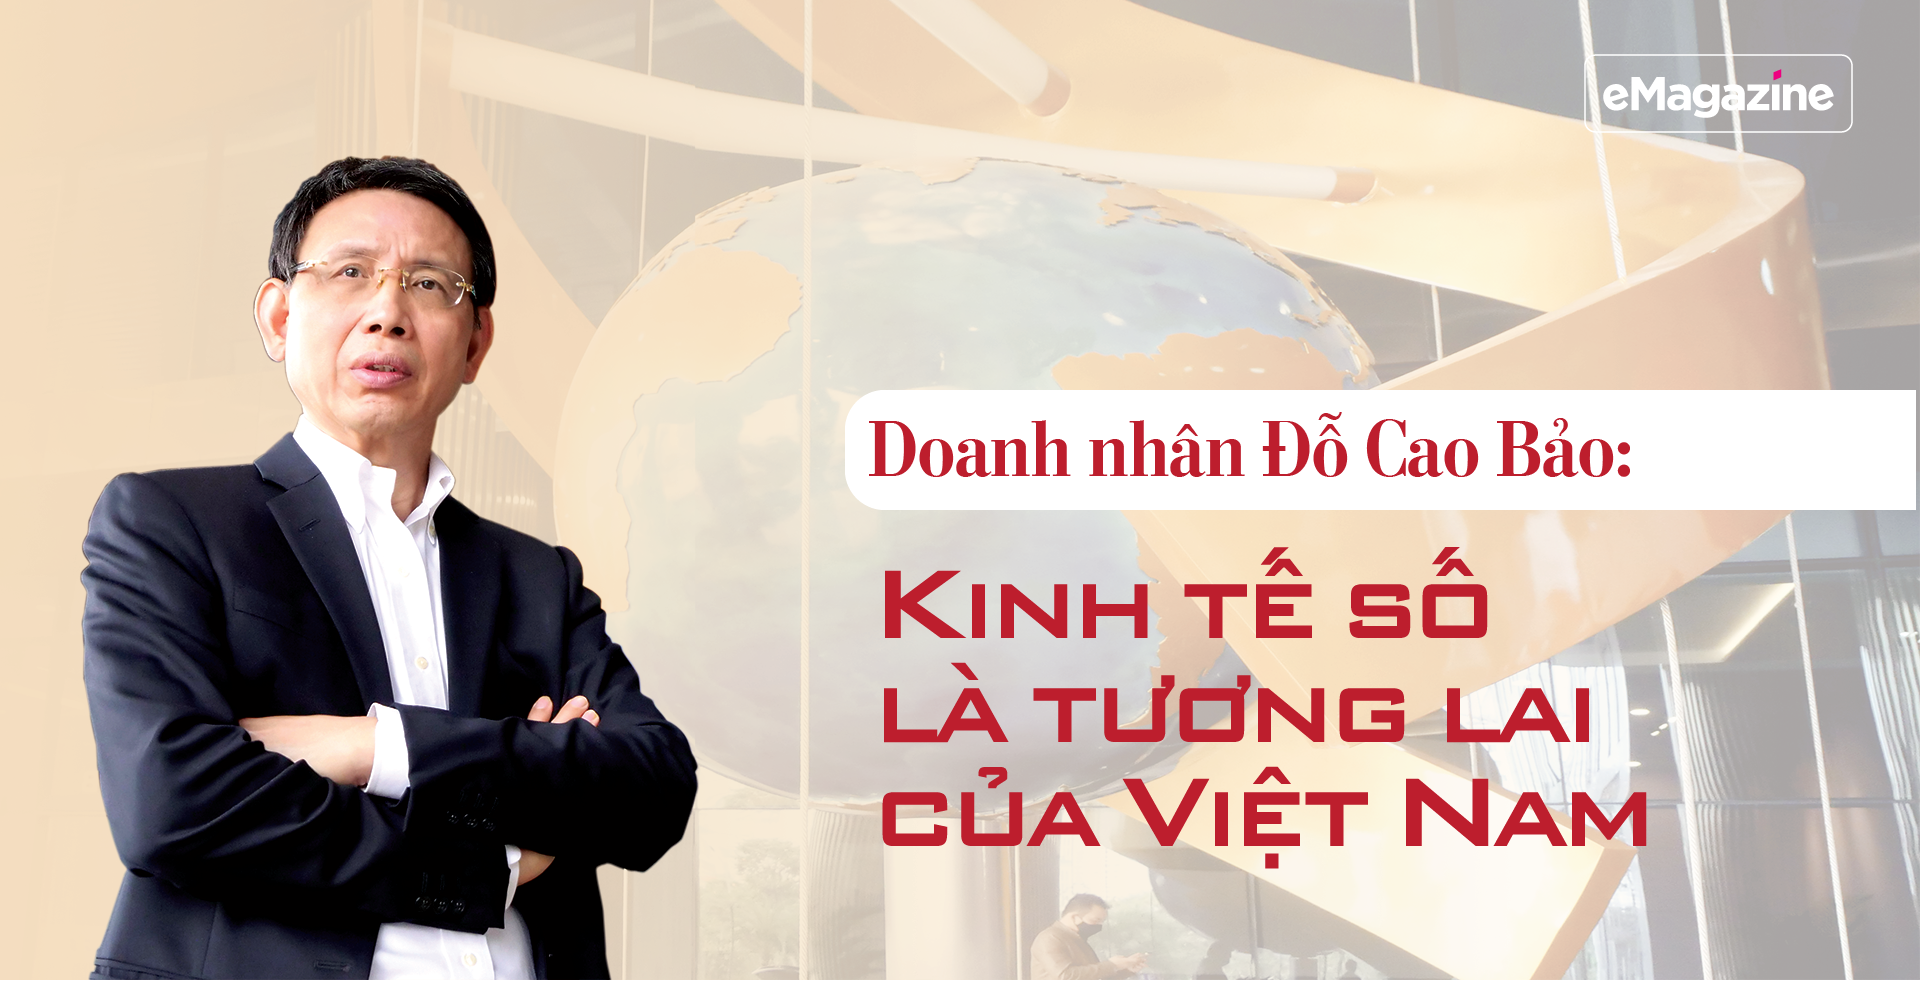 Doanh nhân Đỗ Cao Bảo: Kinh tế số là tương lai của Việt Nam - Ảnh 1